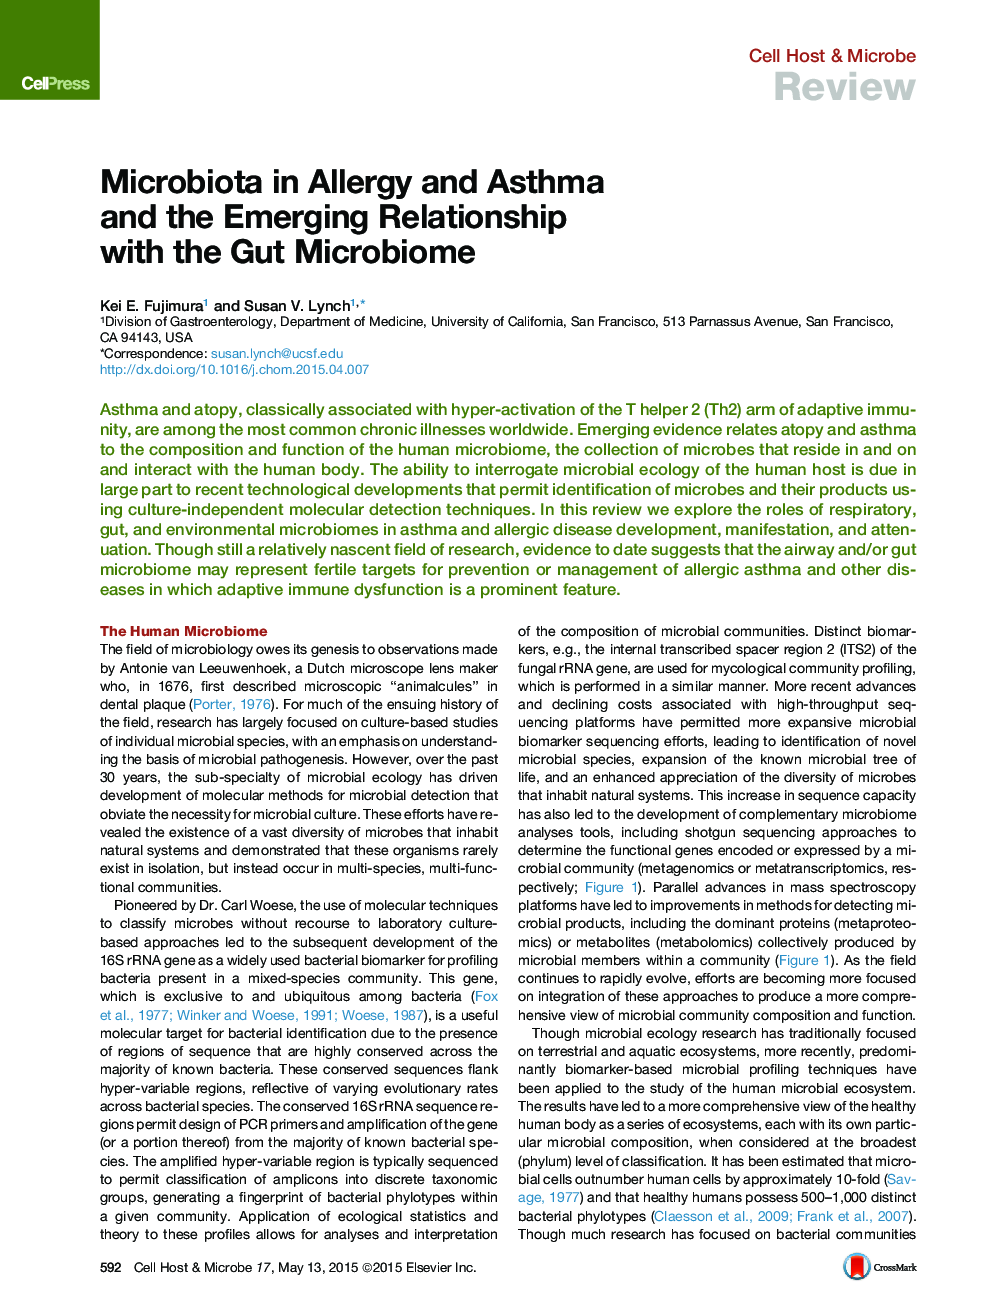 میکروبیولوژیک در آلرژی و آسم و ارتباطات در حال رشد با میکروبیوم روده 